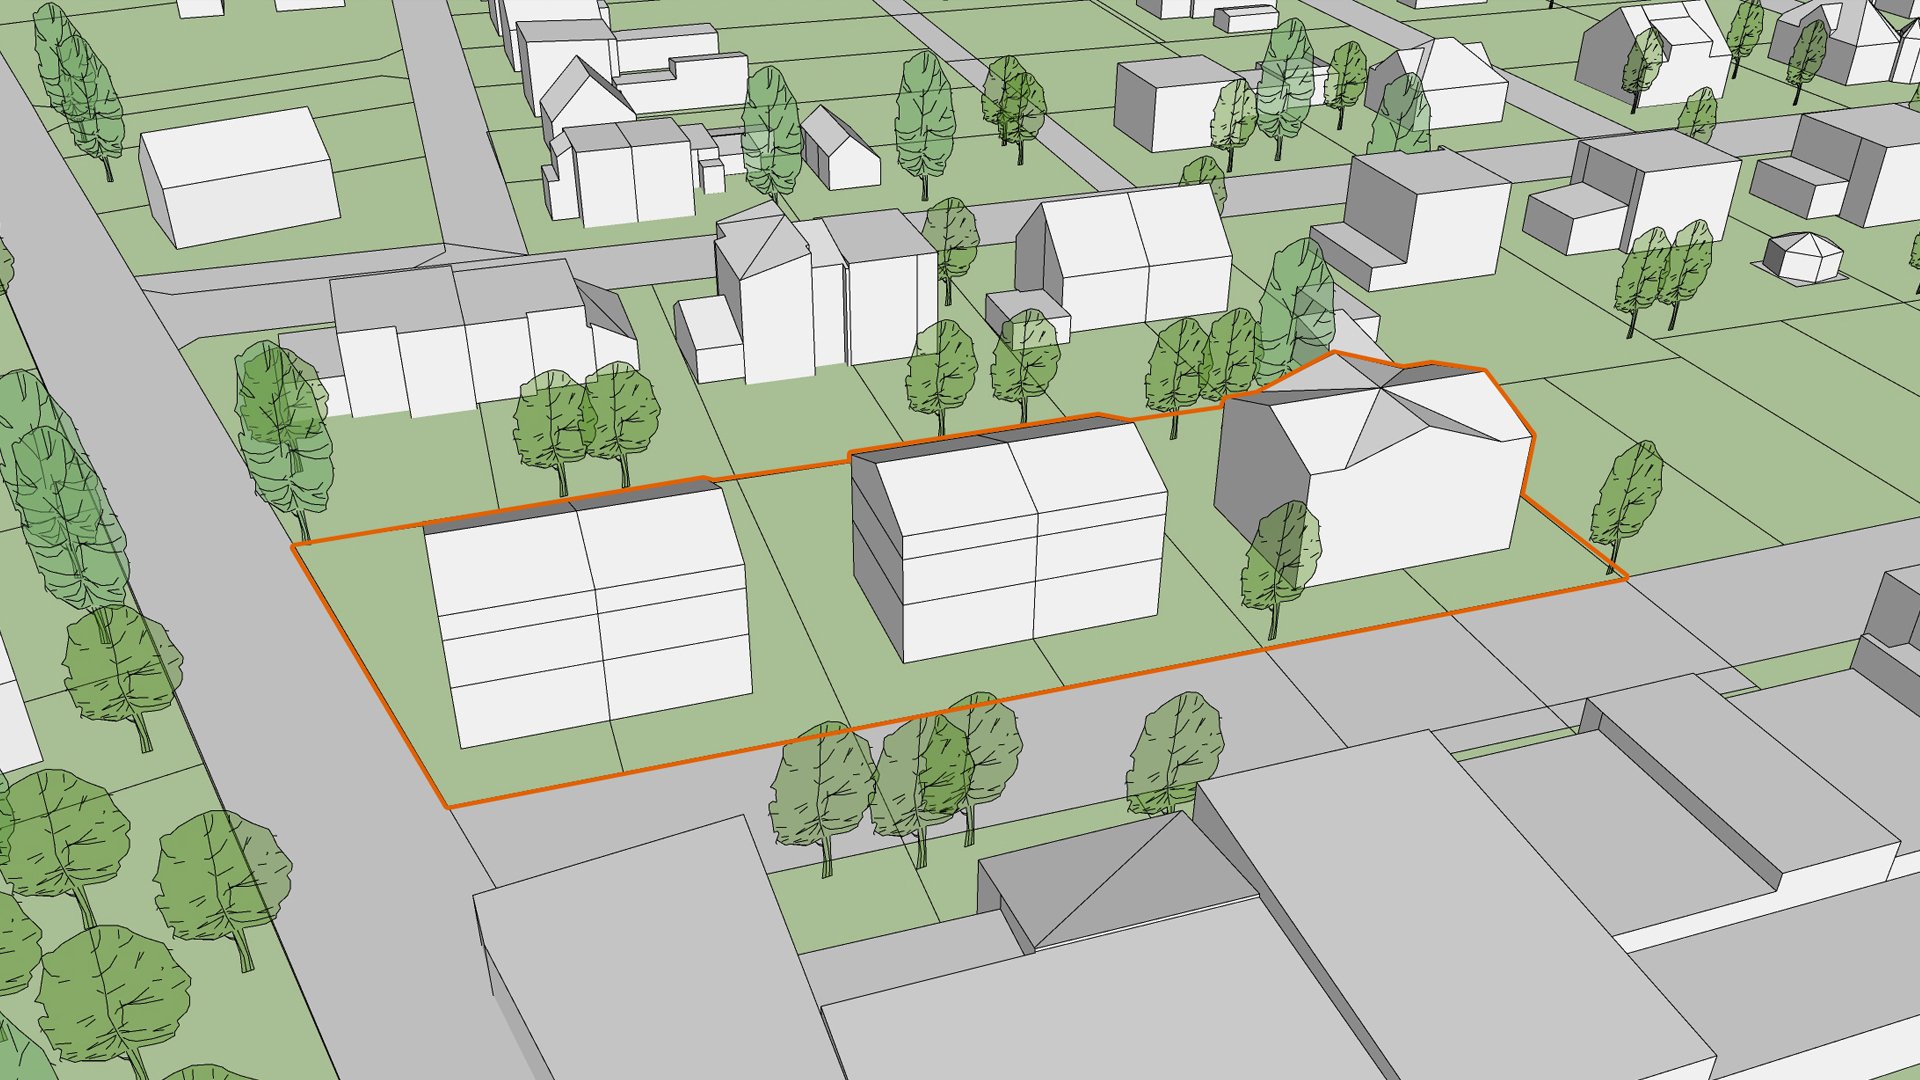 Wizualizacja. Propozycja zagospodarowania terenu wg projektu planu miejscowego. Model przedstawia proste bryły istniejących budynków oraz projektowanych. - grafika artykułu